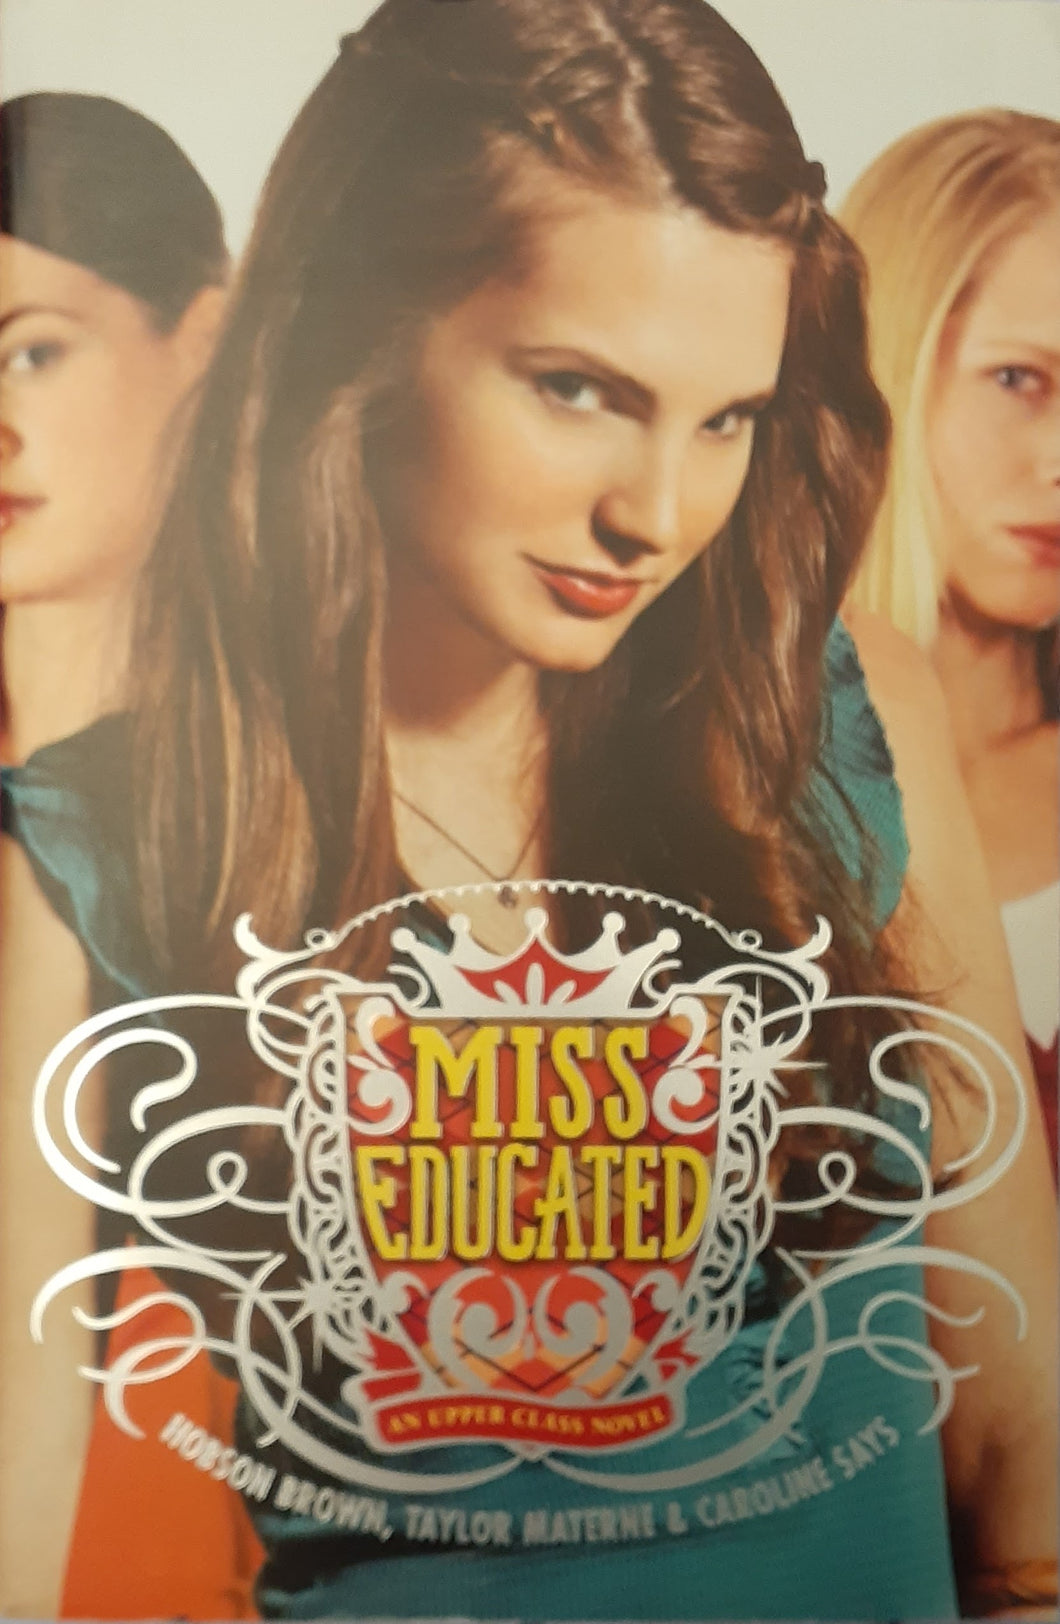 Miss Educated - An Upper Class Novel